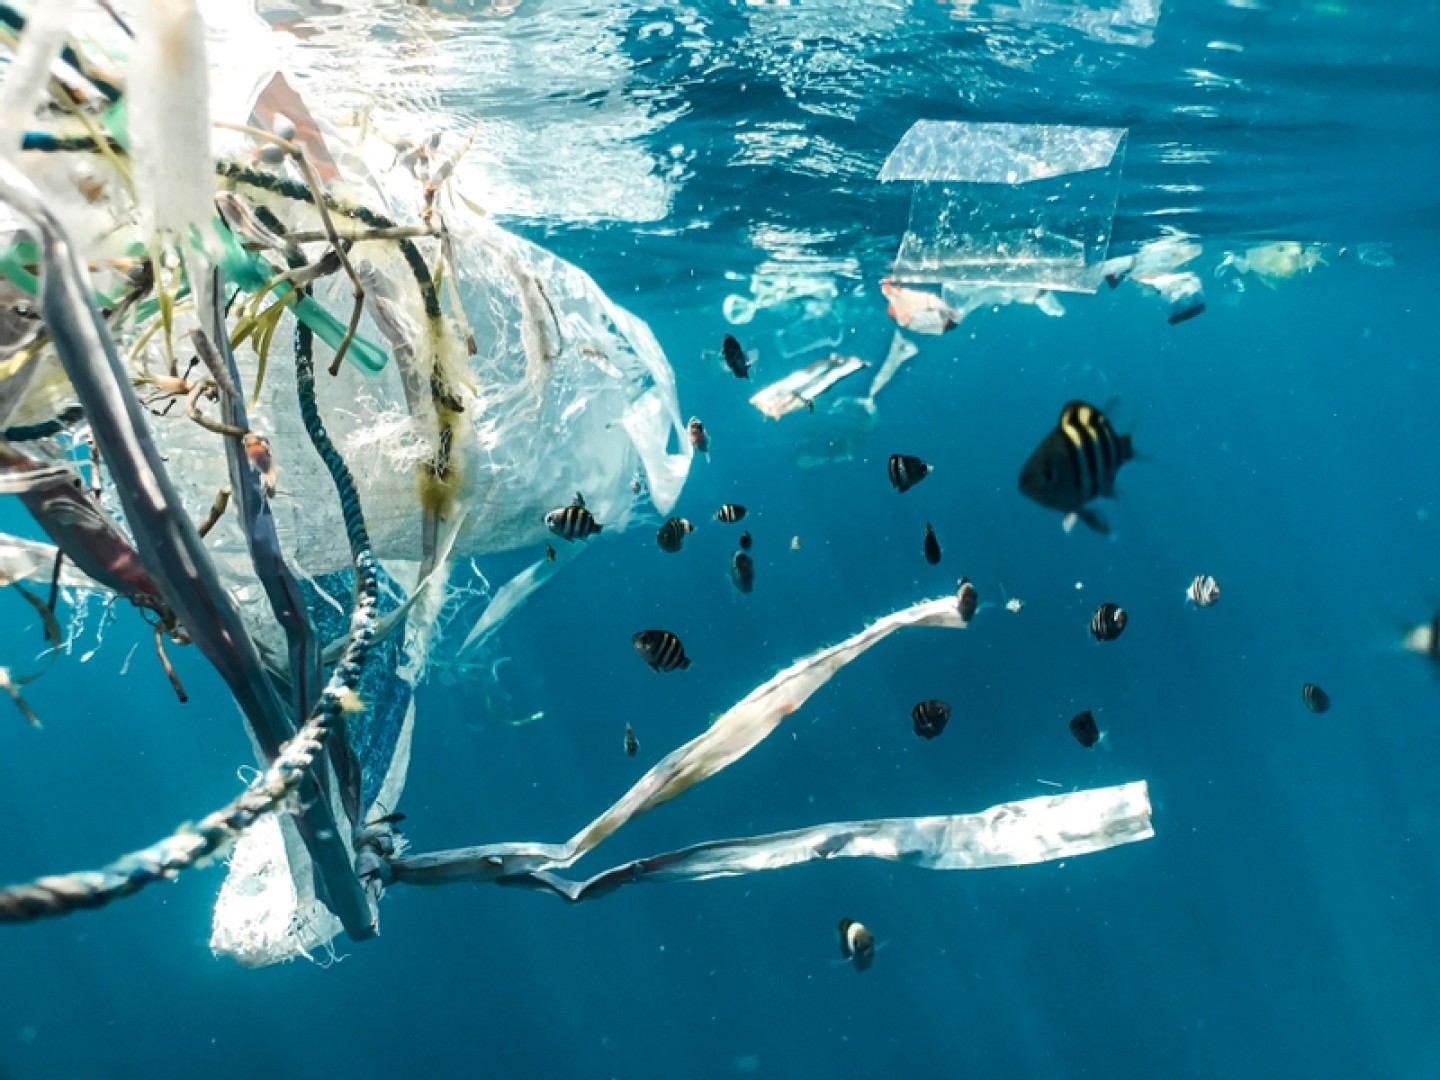 Giovani pesci che nuotano nella plastica
© Naja Bertolt Jensen / Ocean Image Bank